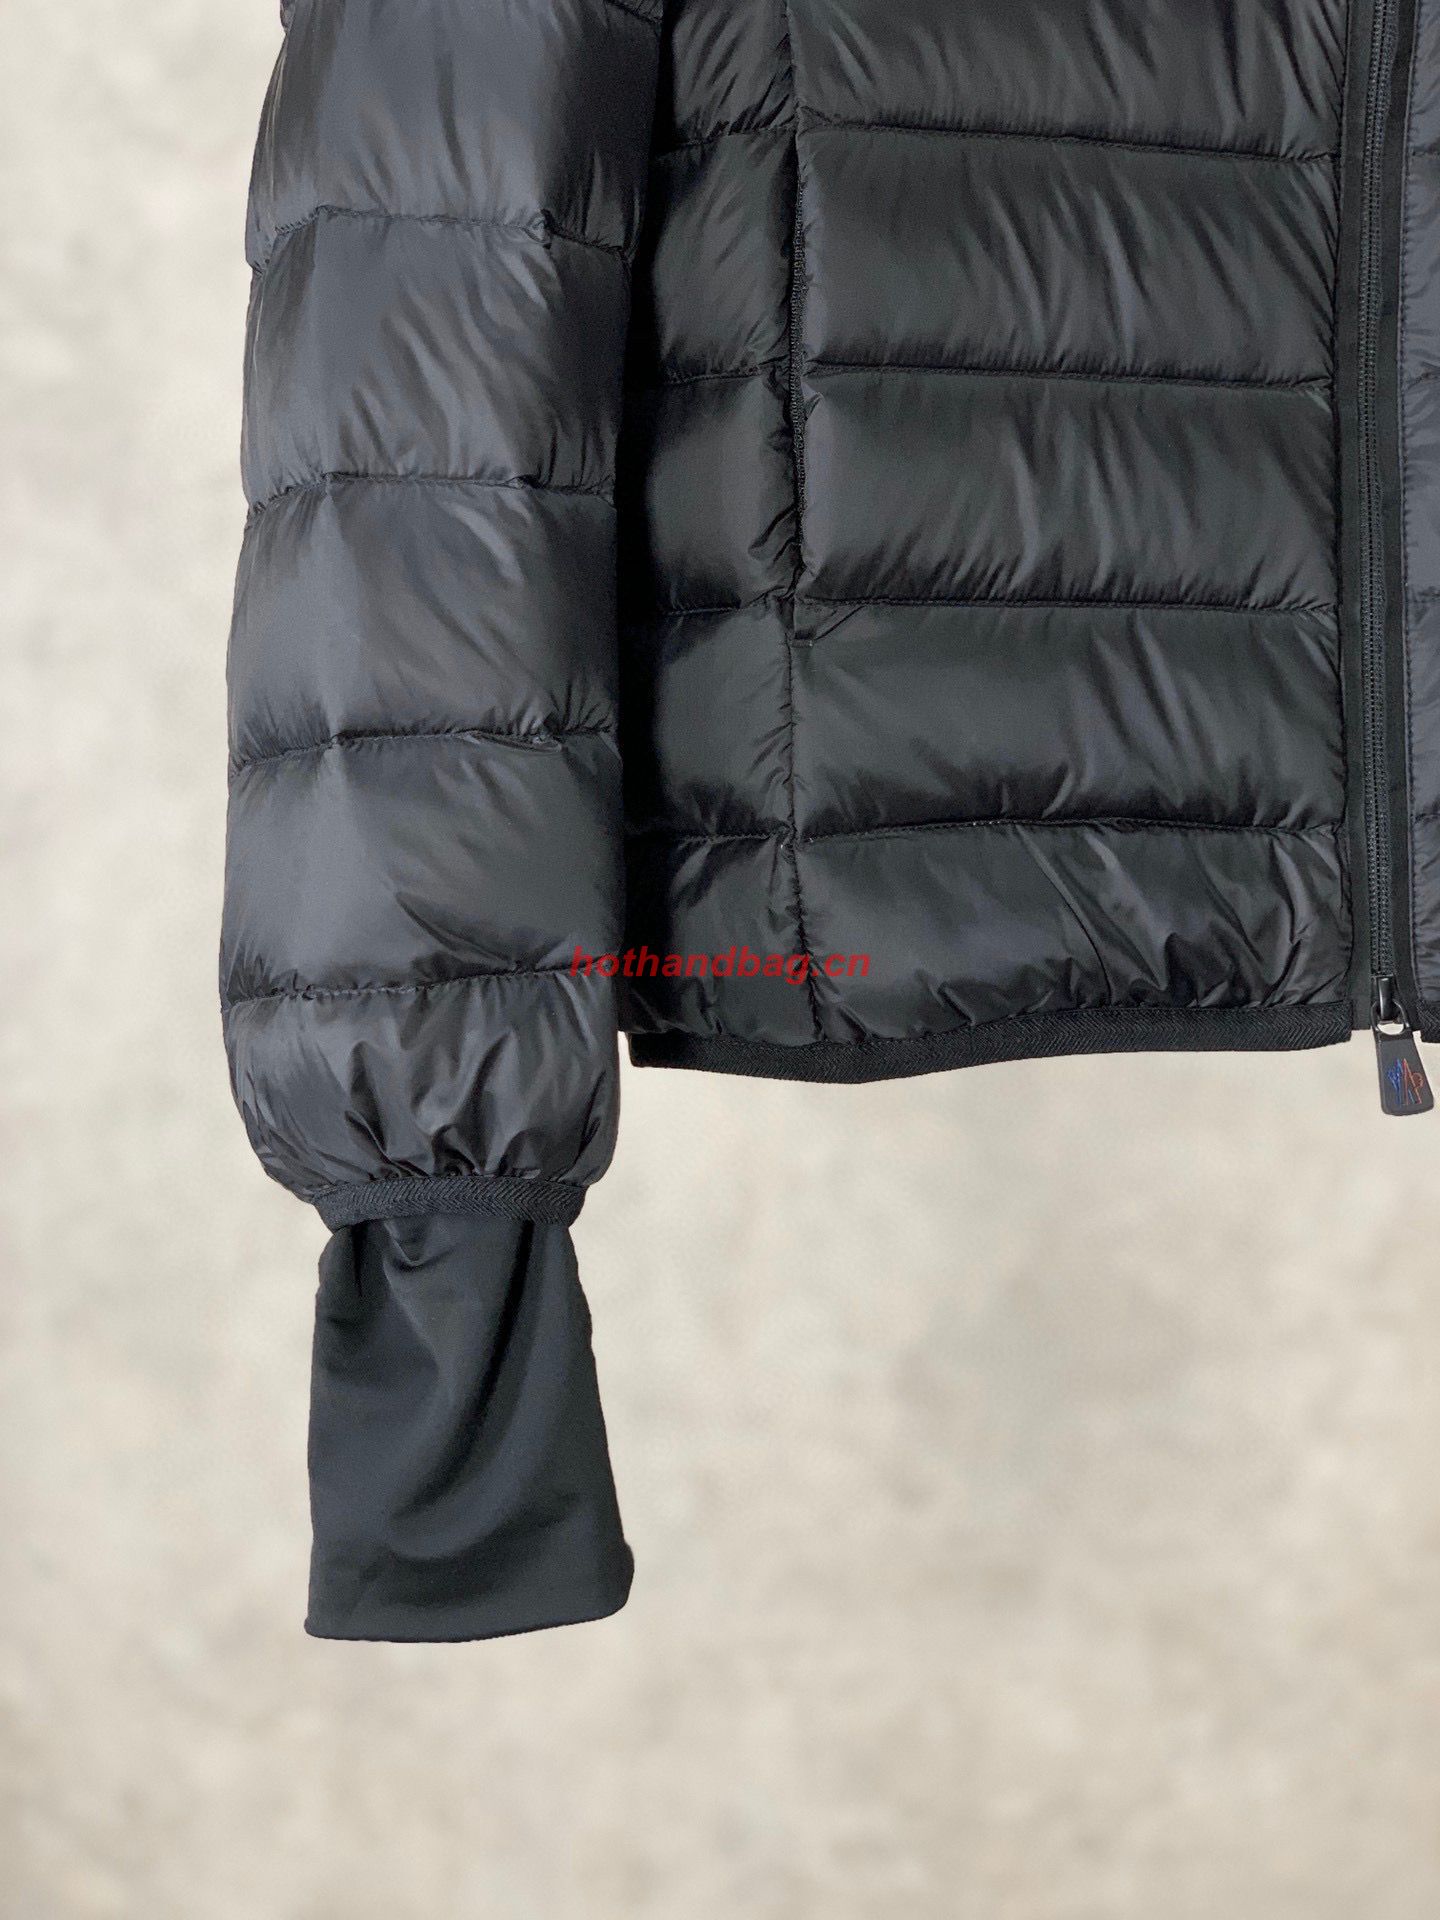 Moncler Couple Top Quality Down Coat MC302728 Black